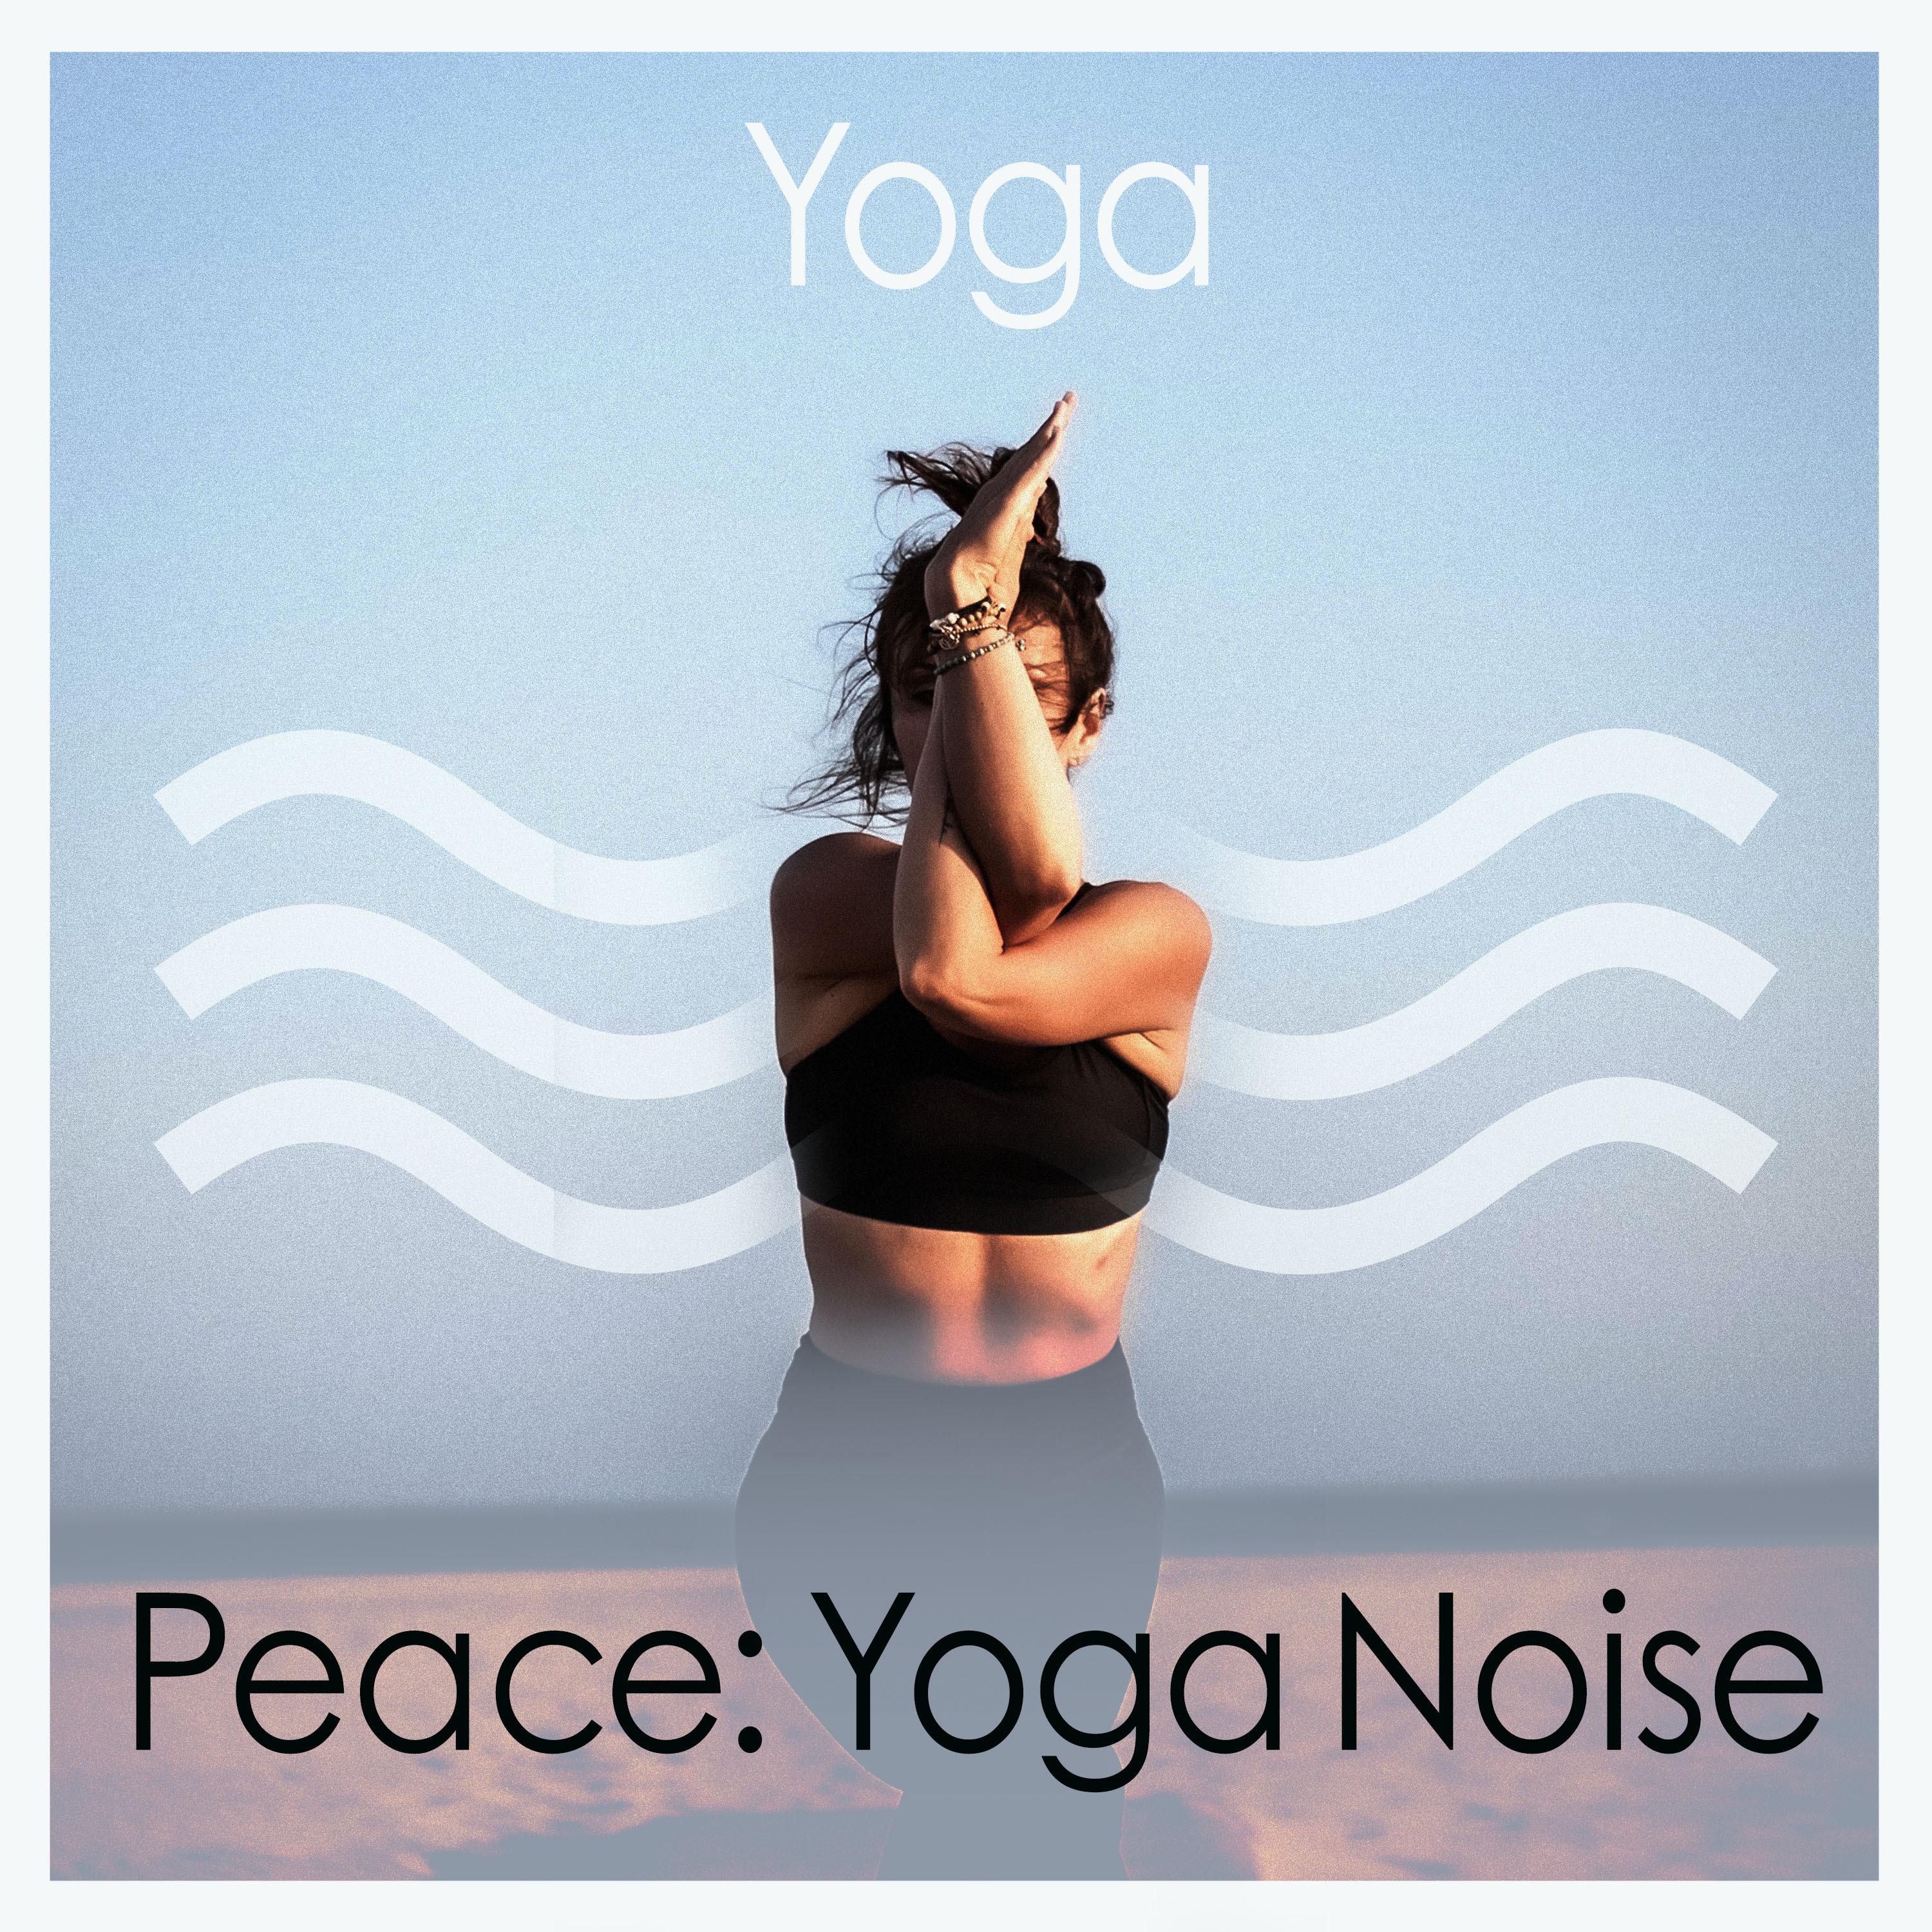 Peace: Yoga Noise